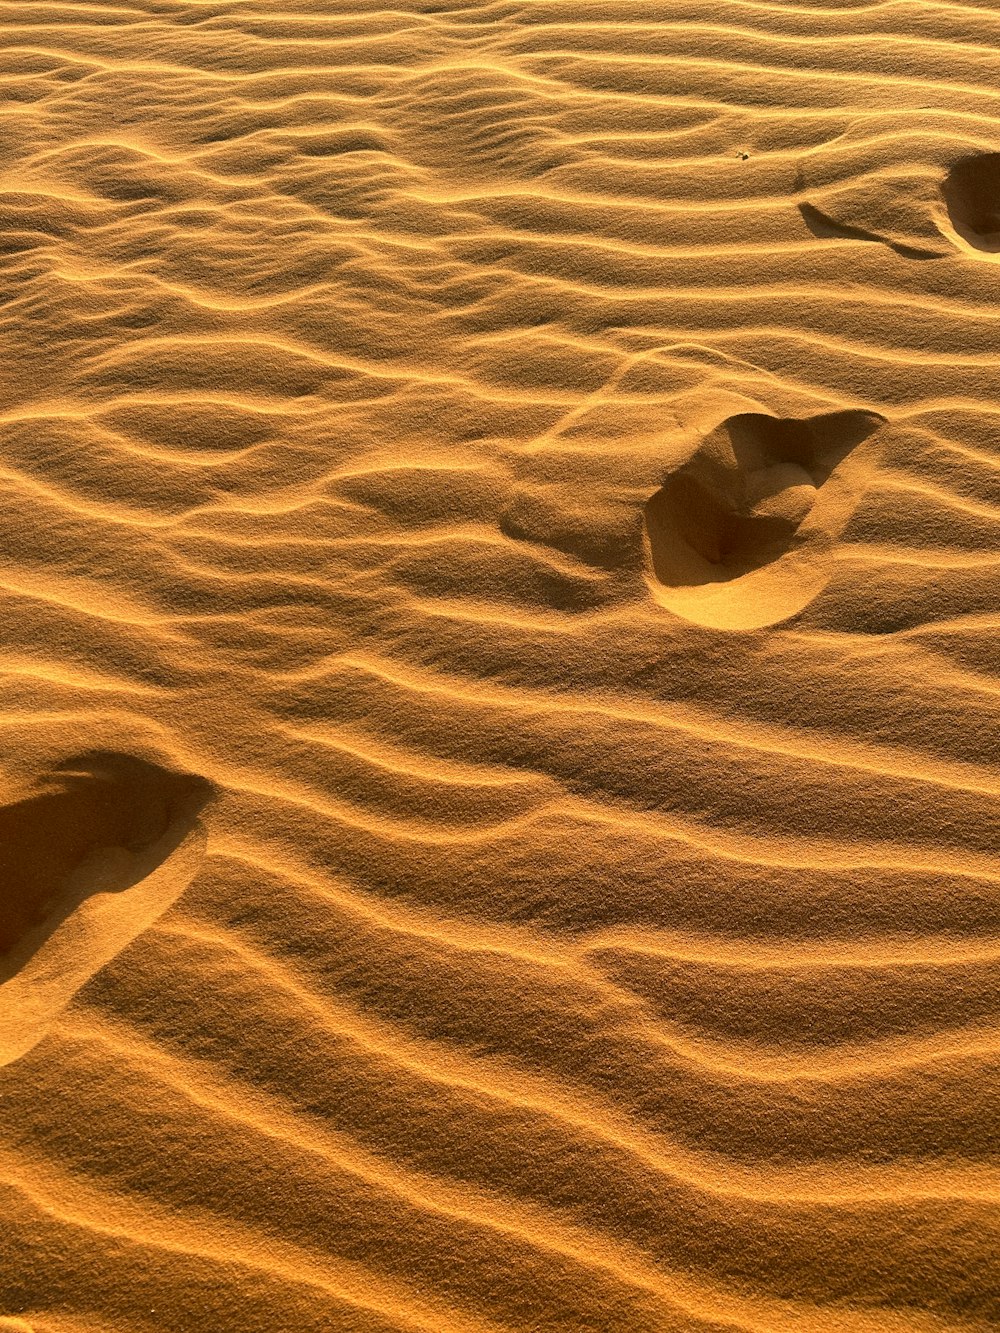 사막의 모래에 두 개의 발자국